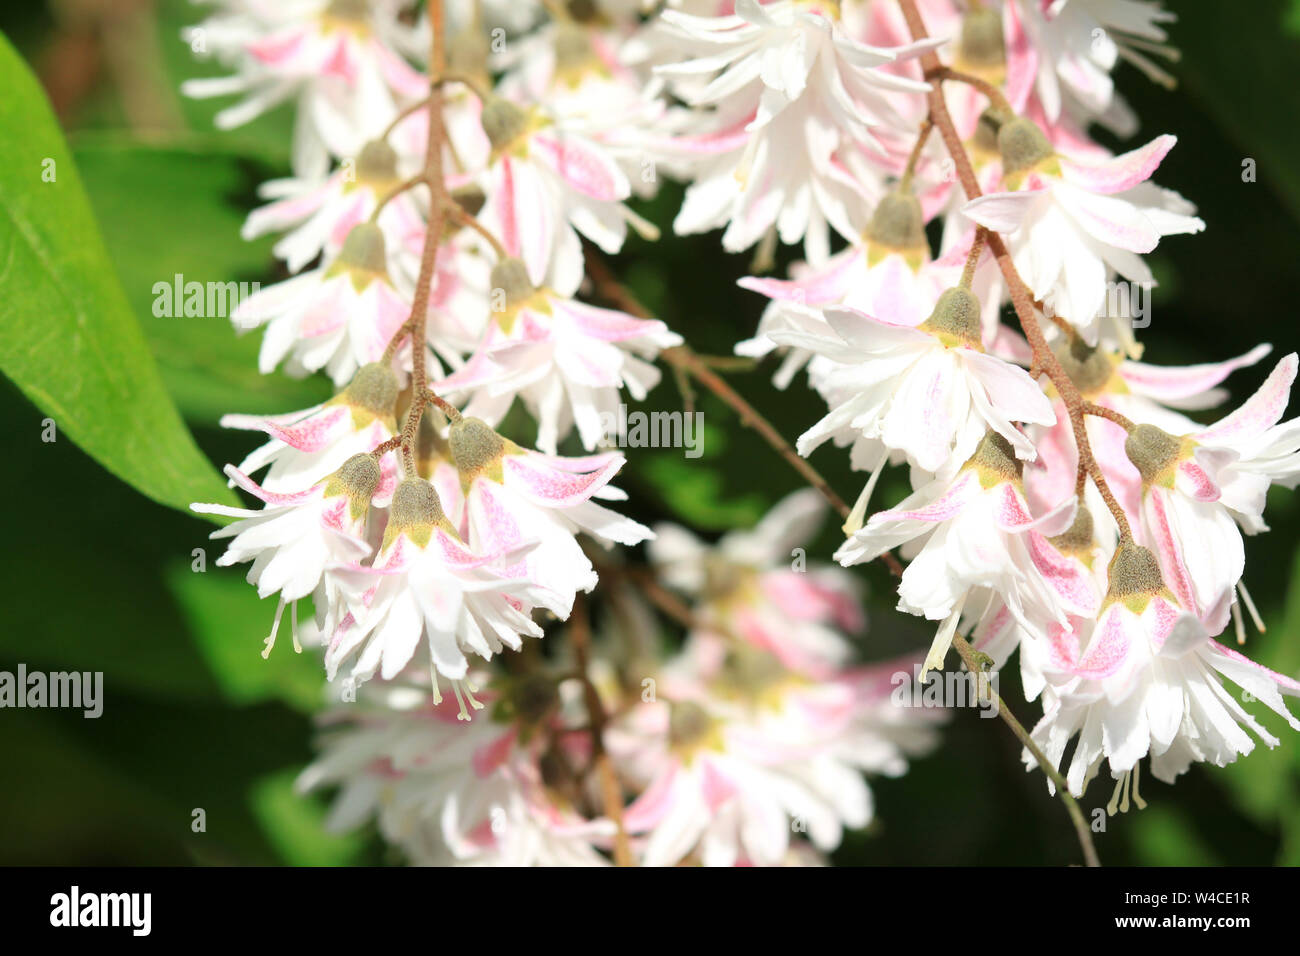 White flowers of Deutzia scabra shrub Stock Photo